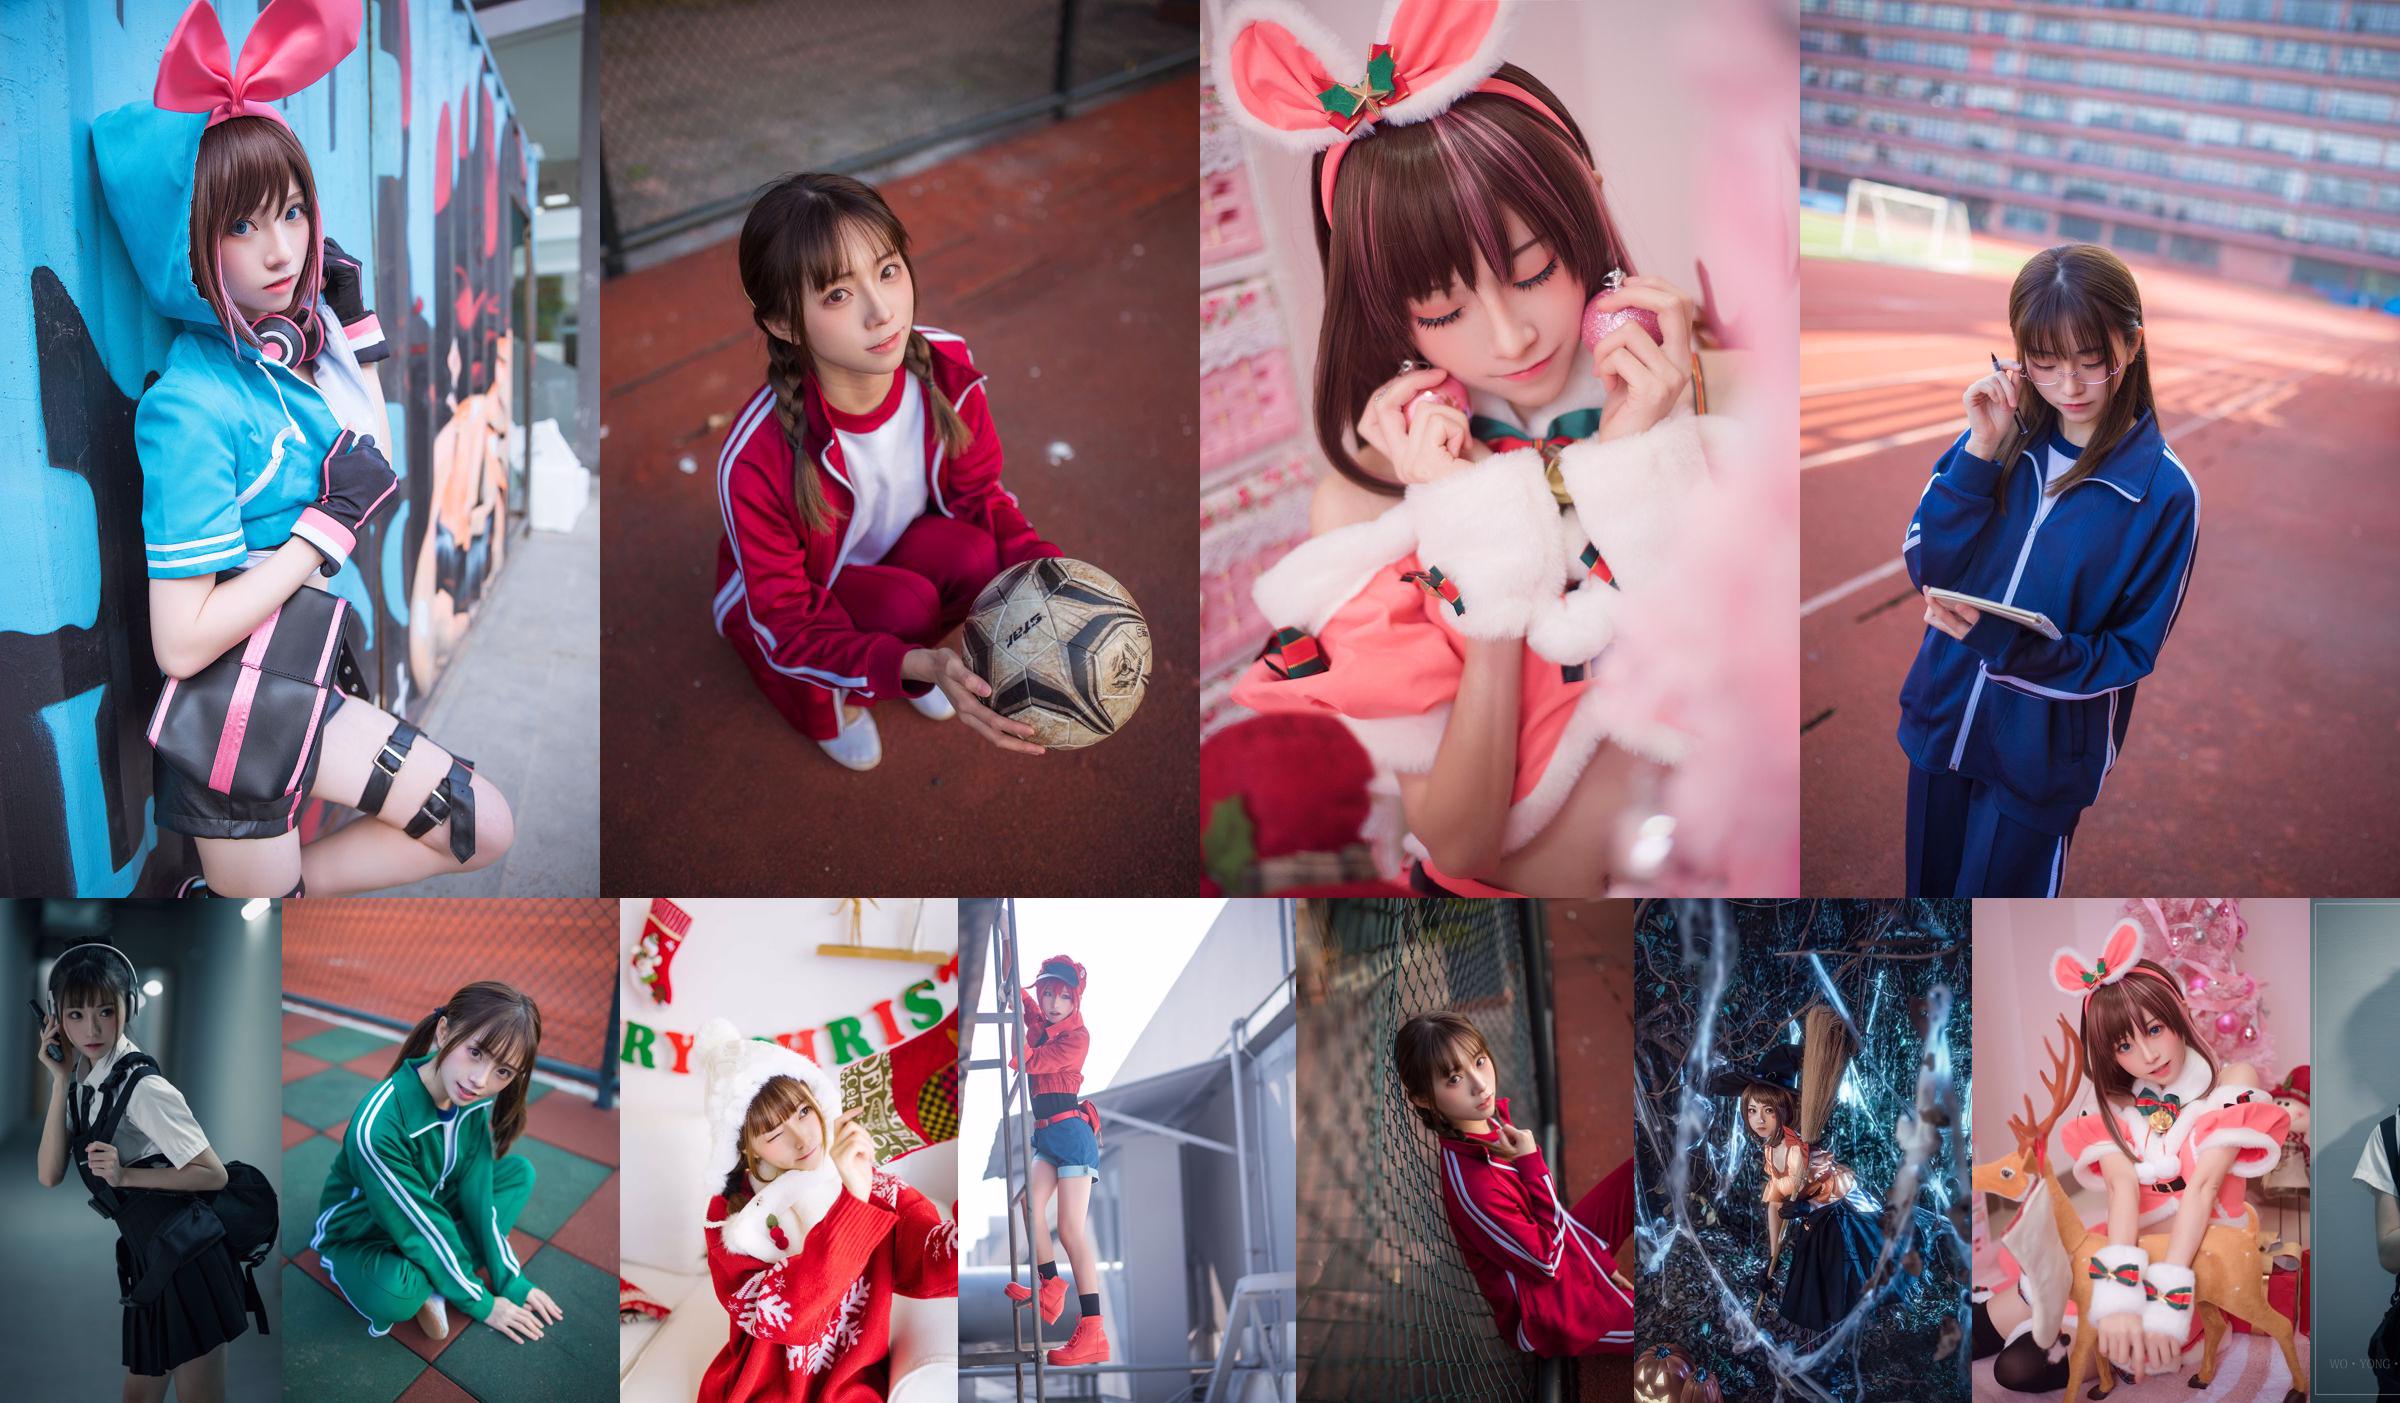 Kitaro_Kitaro "Девушка в красной спортивной одежде" No.083cf5 Страница 1